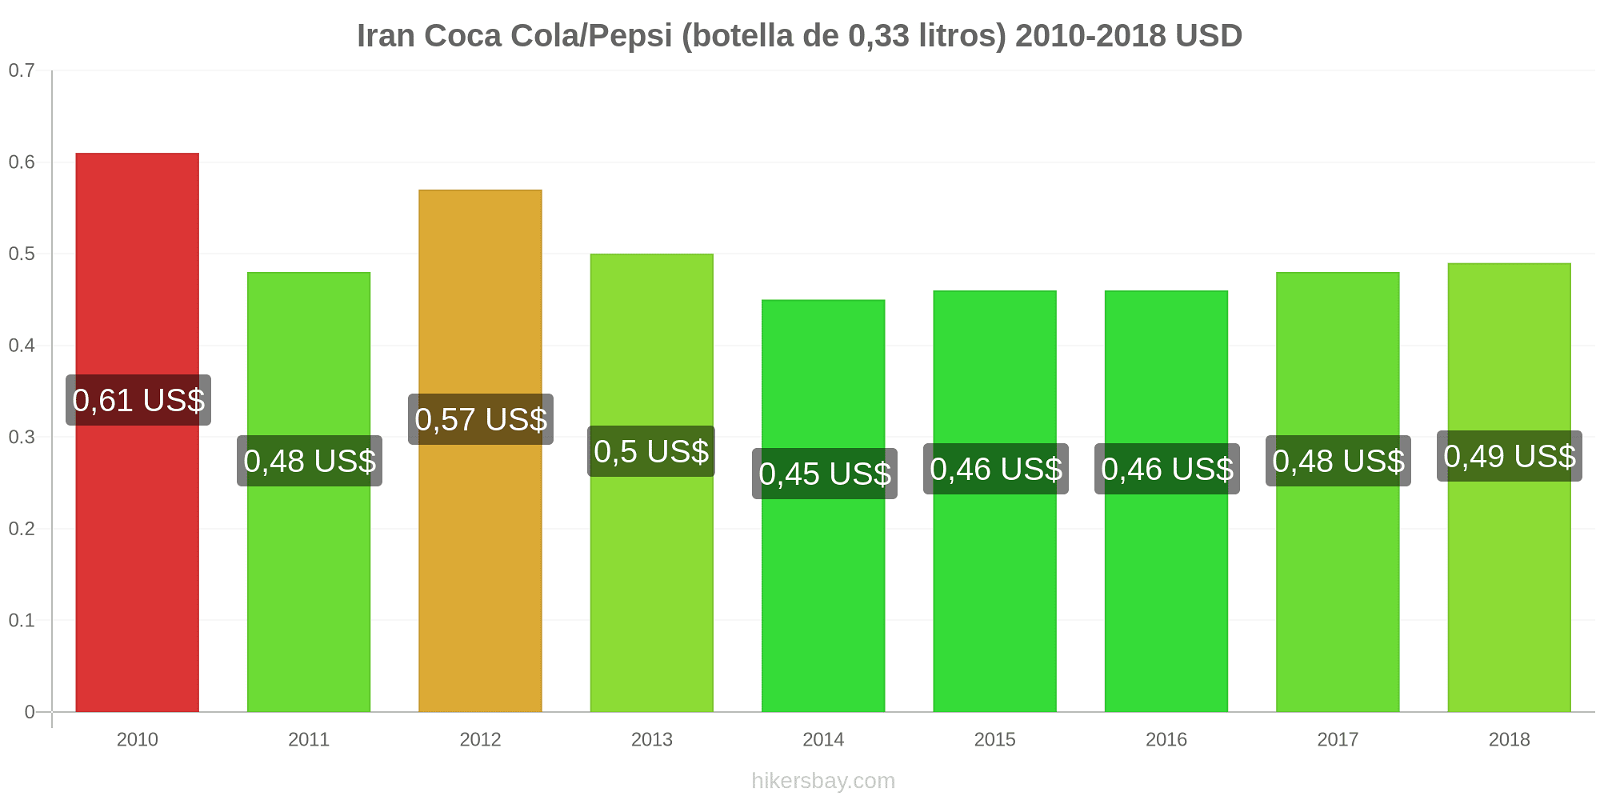 Iran cambios de precios Coca-Cola/Pepsi (botella de 0.33 litros) hikersbay.com